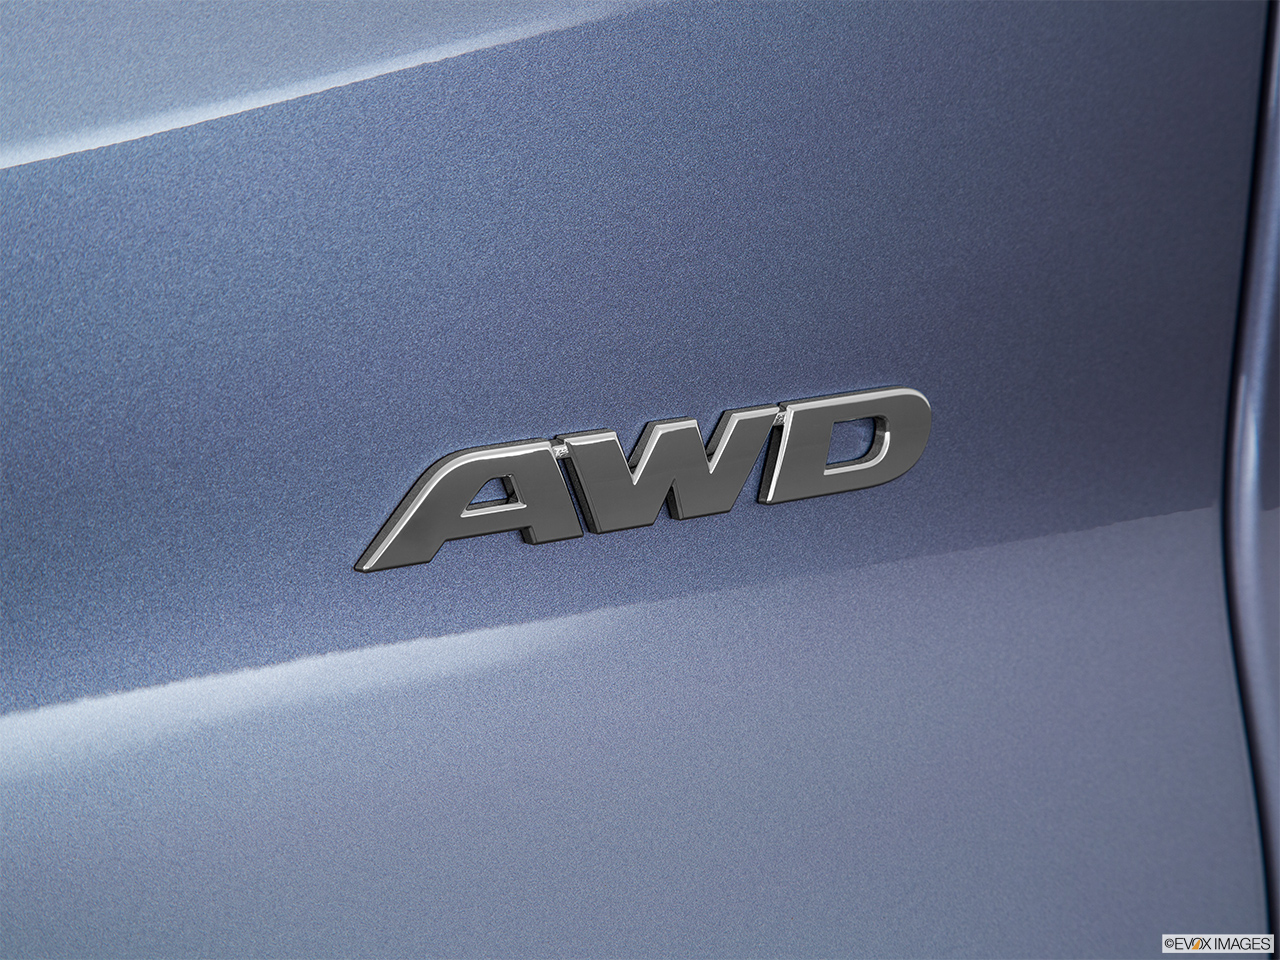 2015 Acura RDX AWD Exterior Bonus Shots (no set spec) 